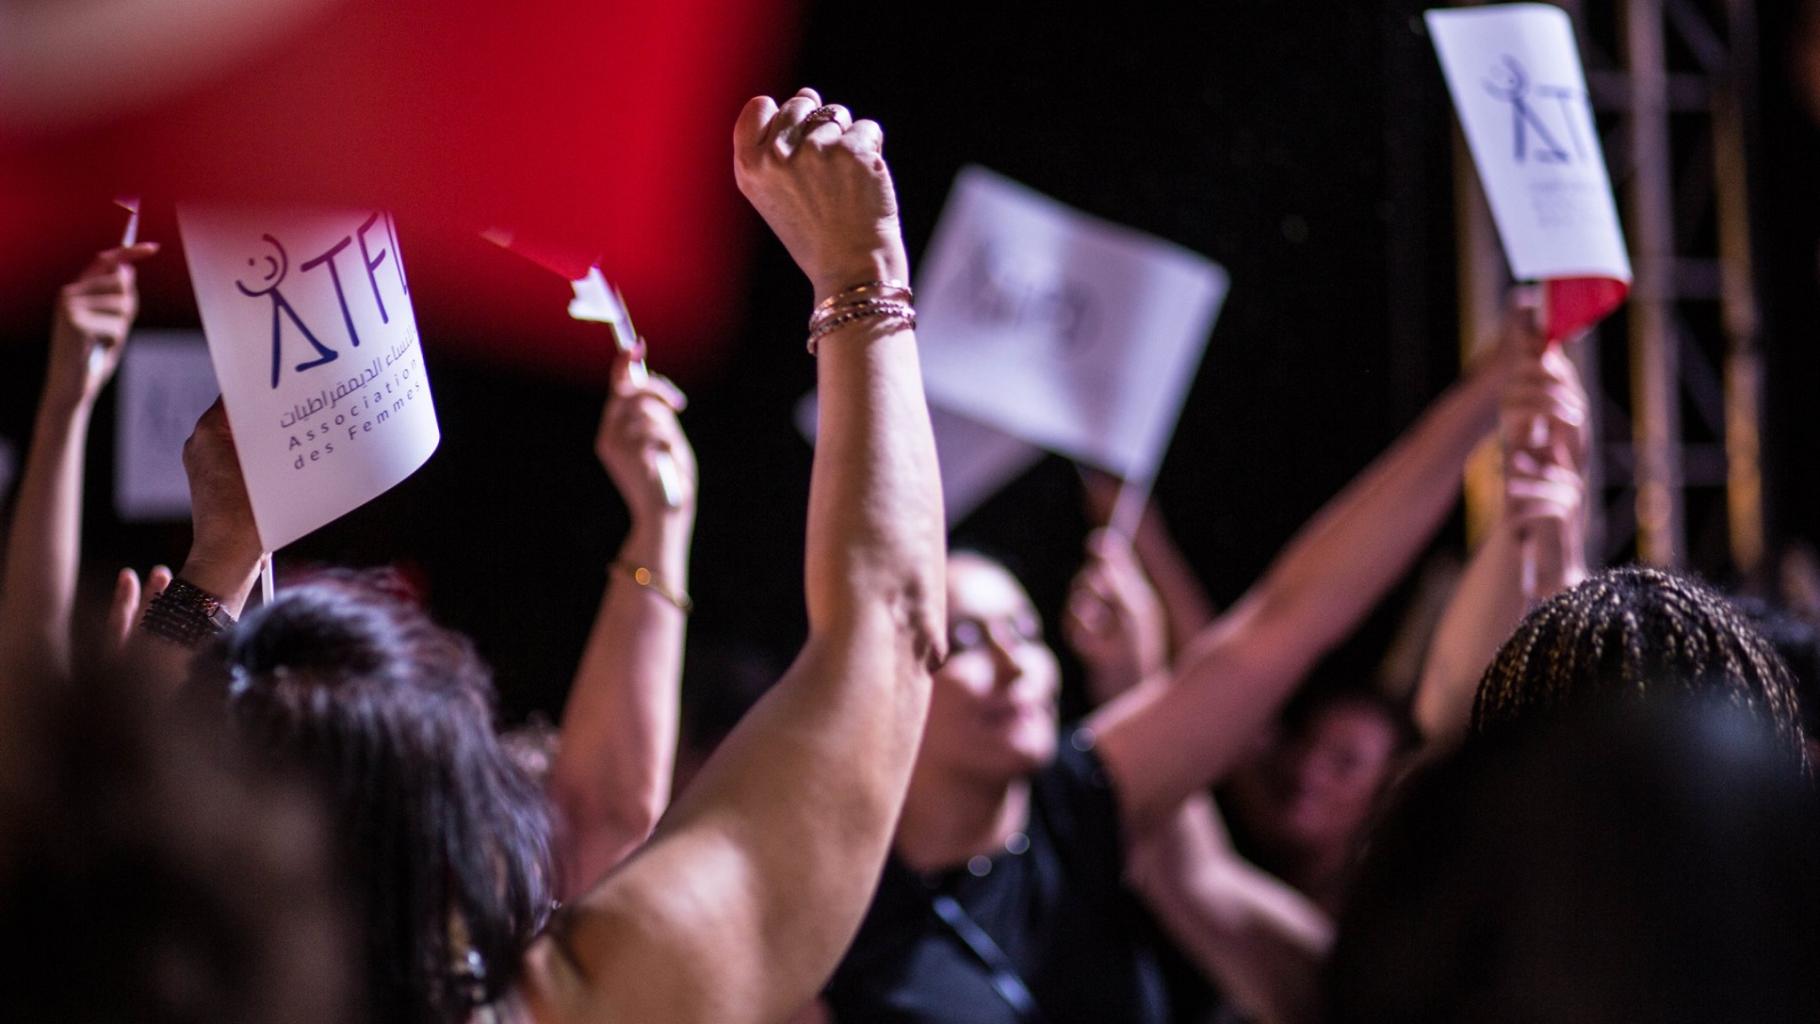 Frauen halten Plakate mit dem ATFD-Logo in die Luft